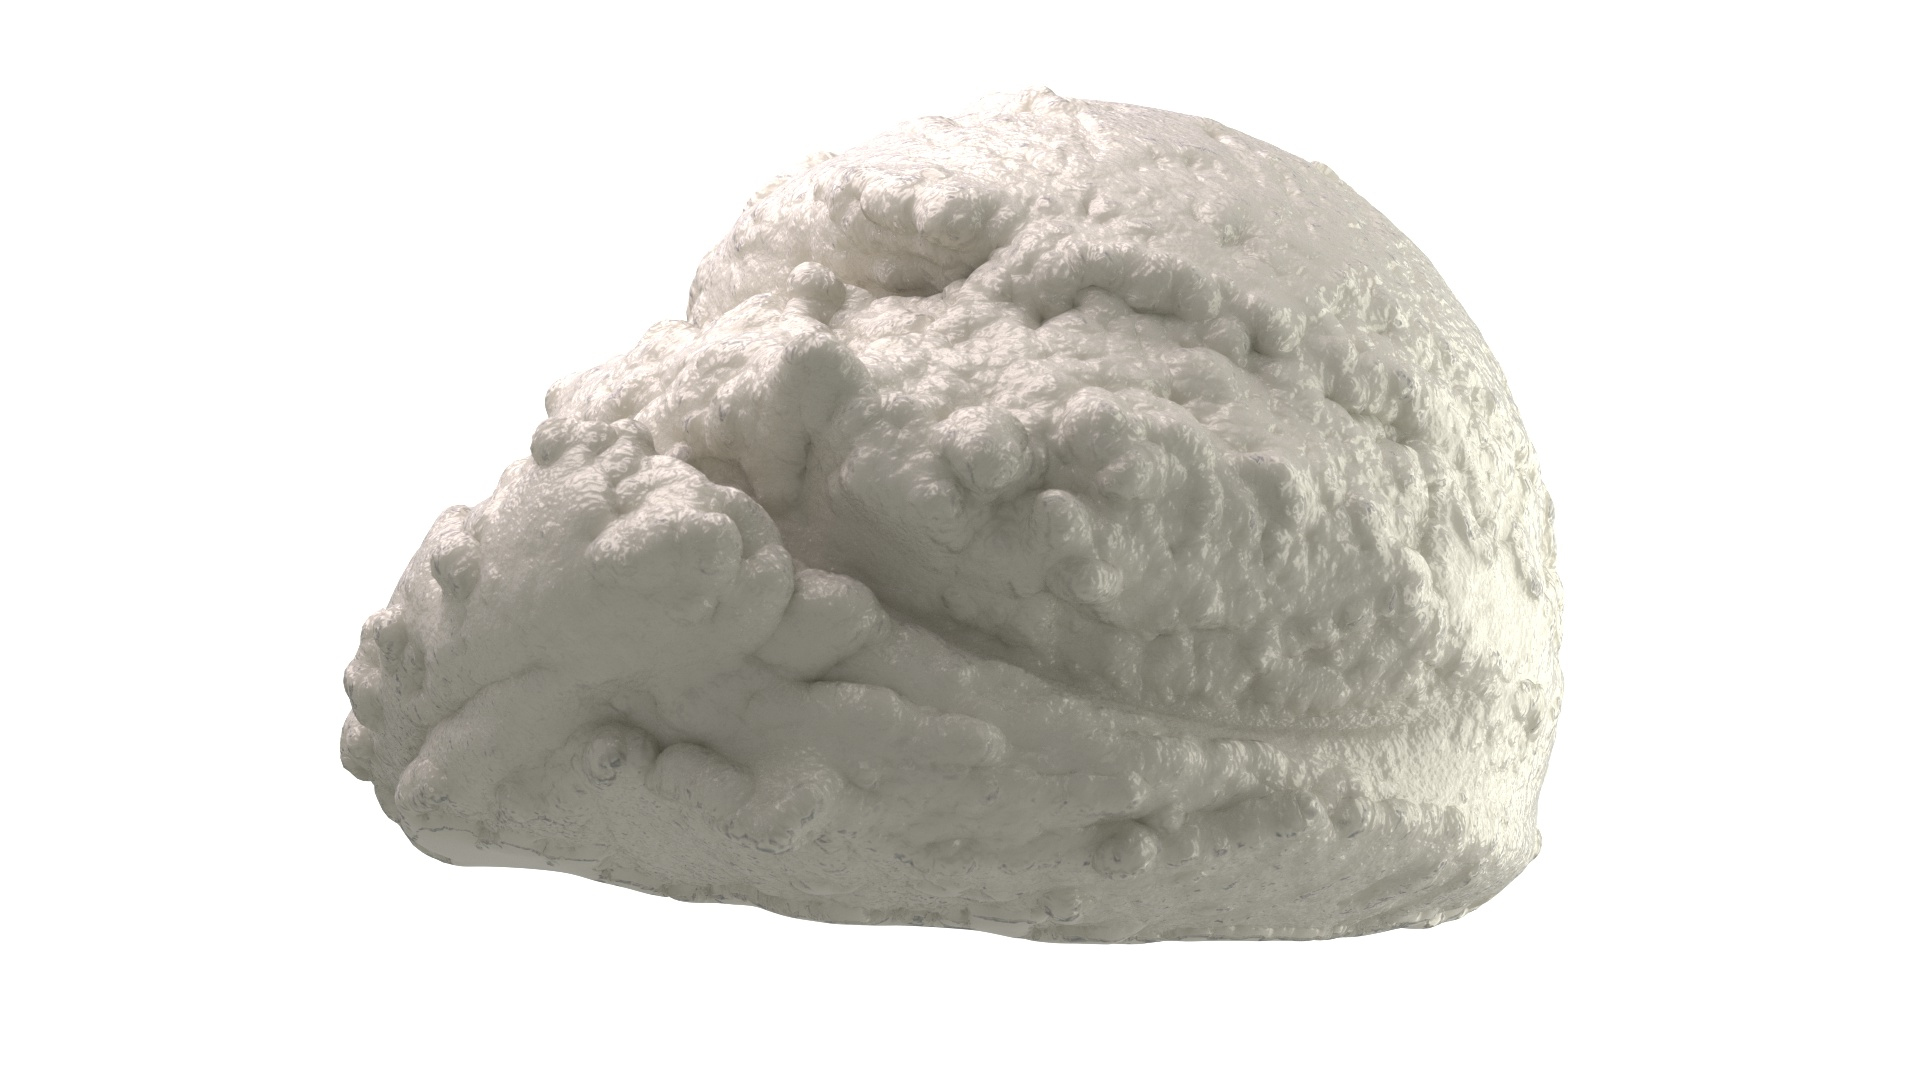 Golden Ice Cream Scoop 3D model - TurboSquid 1888306